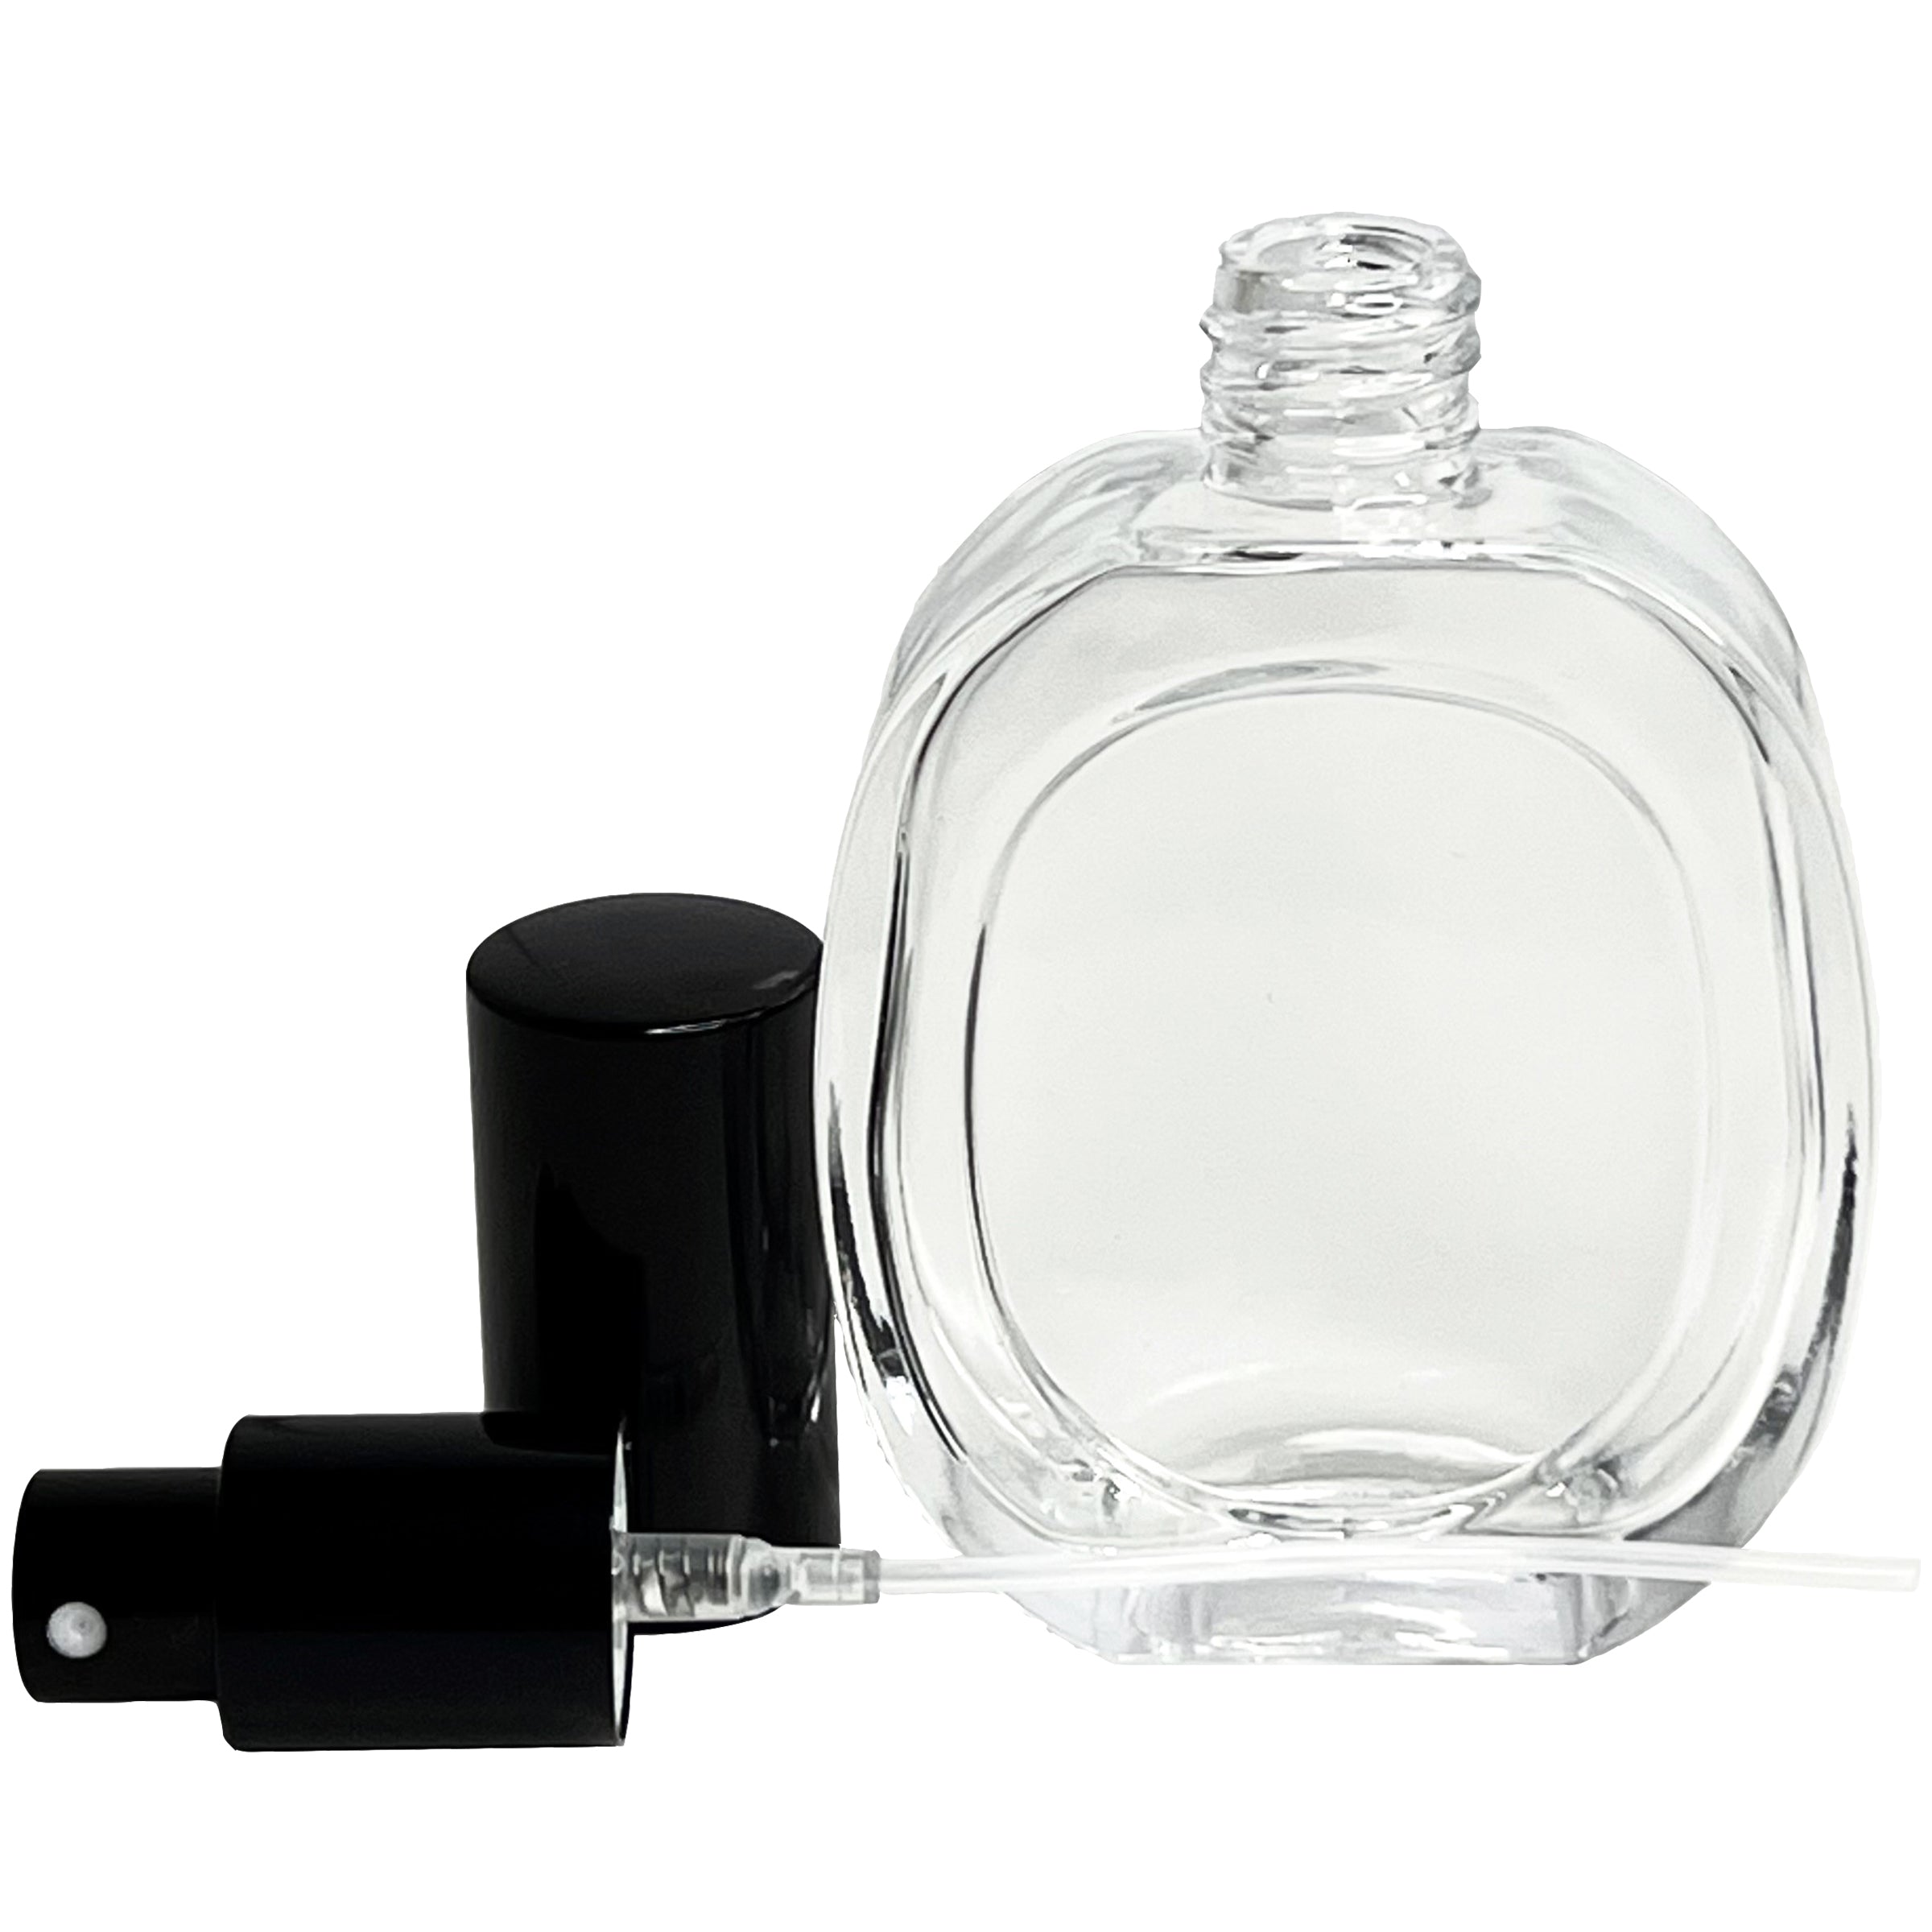 50ml 1.7 oz Empty Glass Perfume Oval Spray Bottles Black Metal Atomizer Refillable